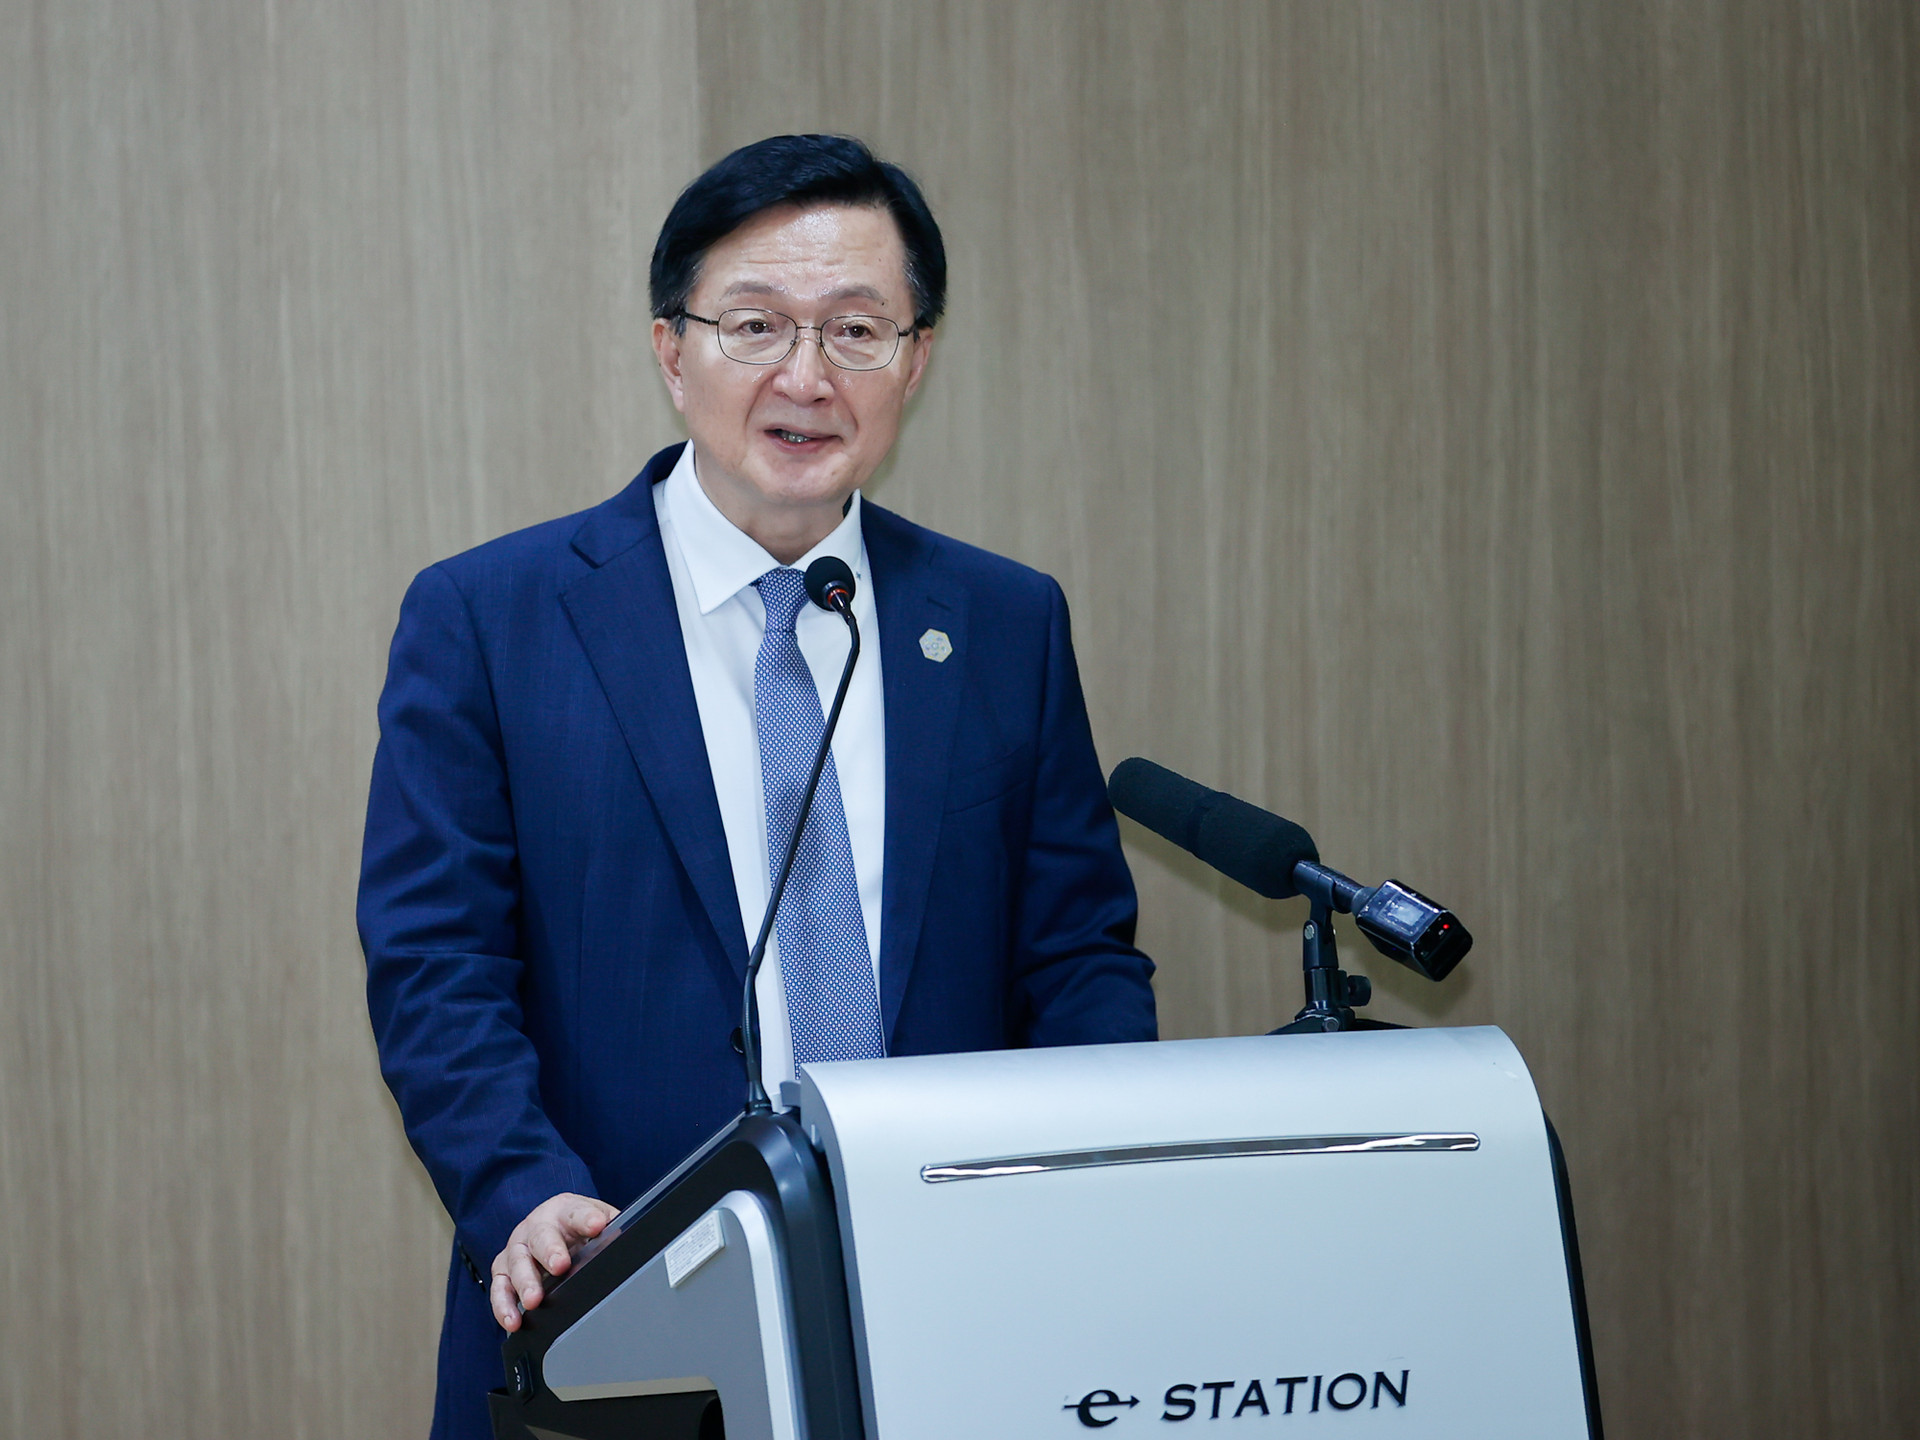 Thủ tướng gửi thông điệp quan trọng trong phát biểu chính sách tại Đại học Quốc gia của Hàn Quốc- Ảnh 7.